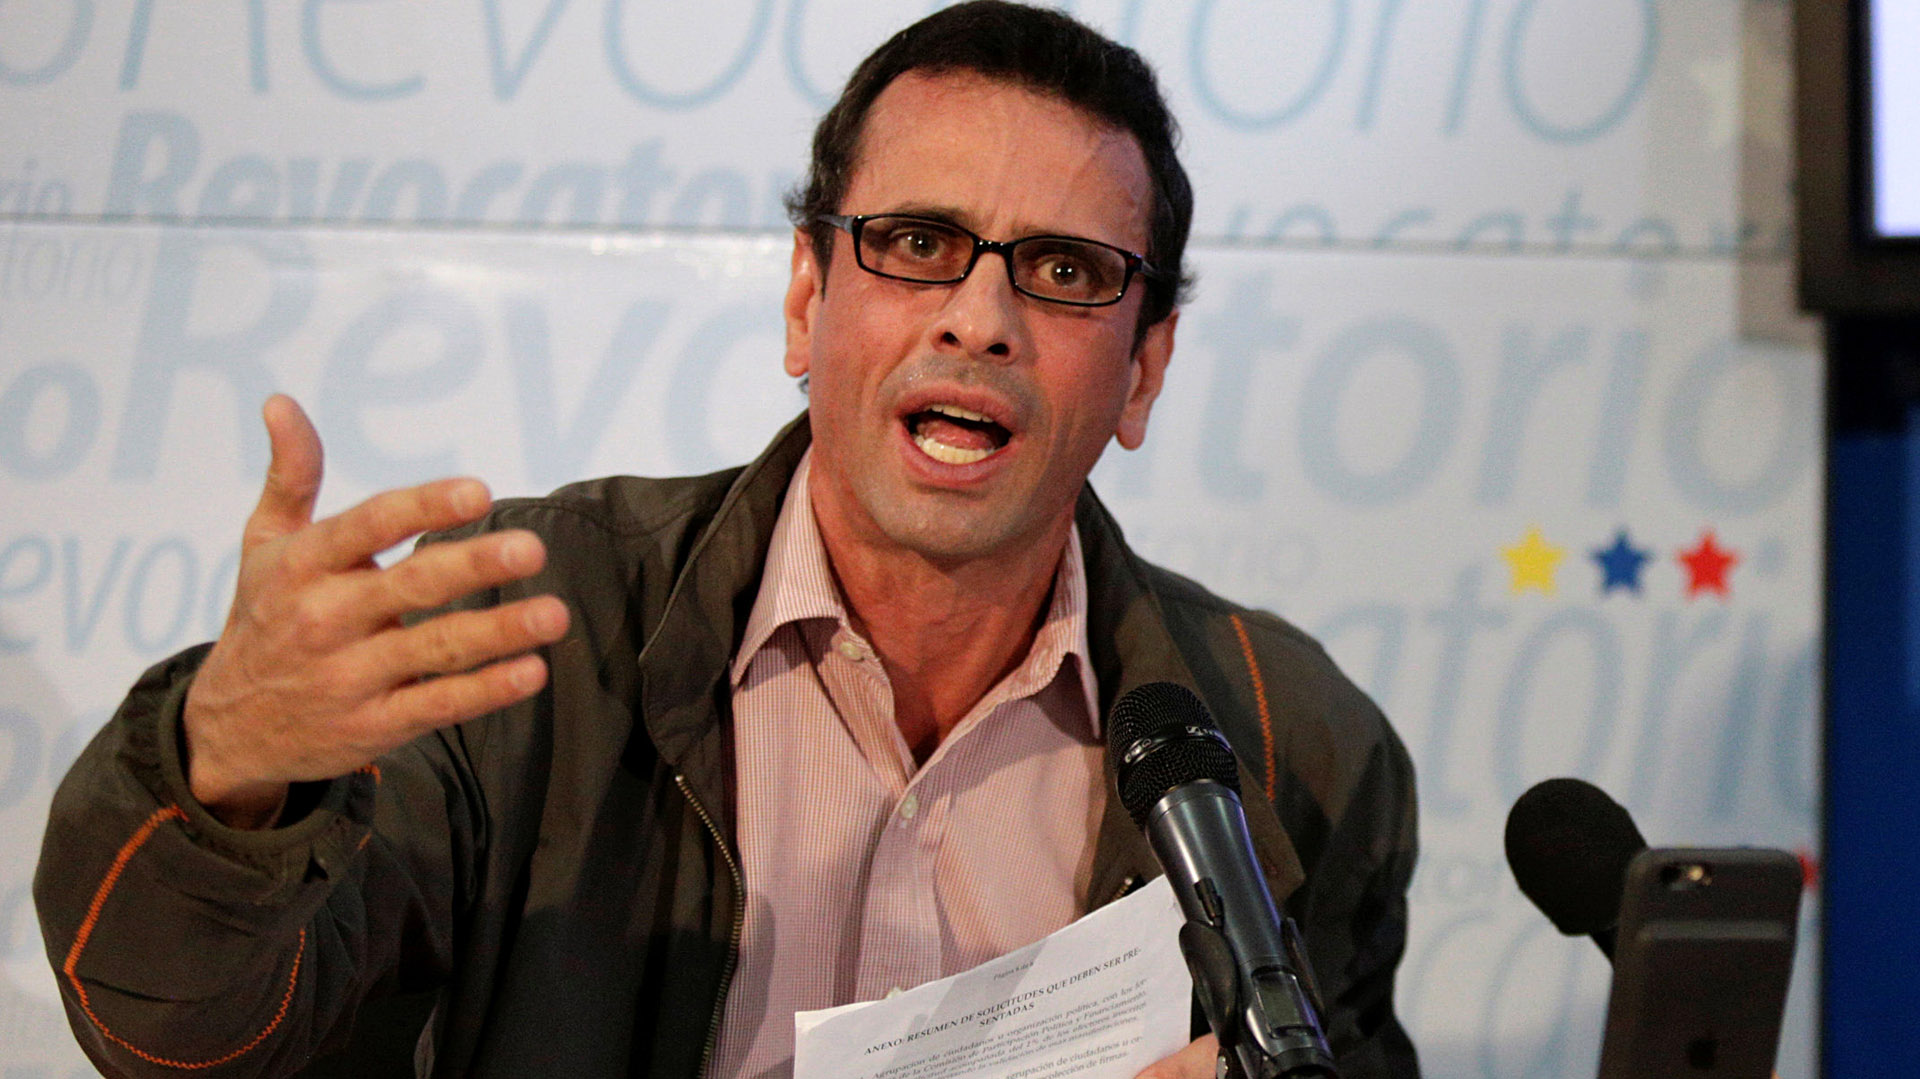 Henrique Capriles: “Votar o no votar es un falso dilema. El verdadero dilema es si luchamos o no luchamos”